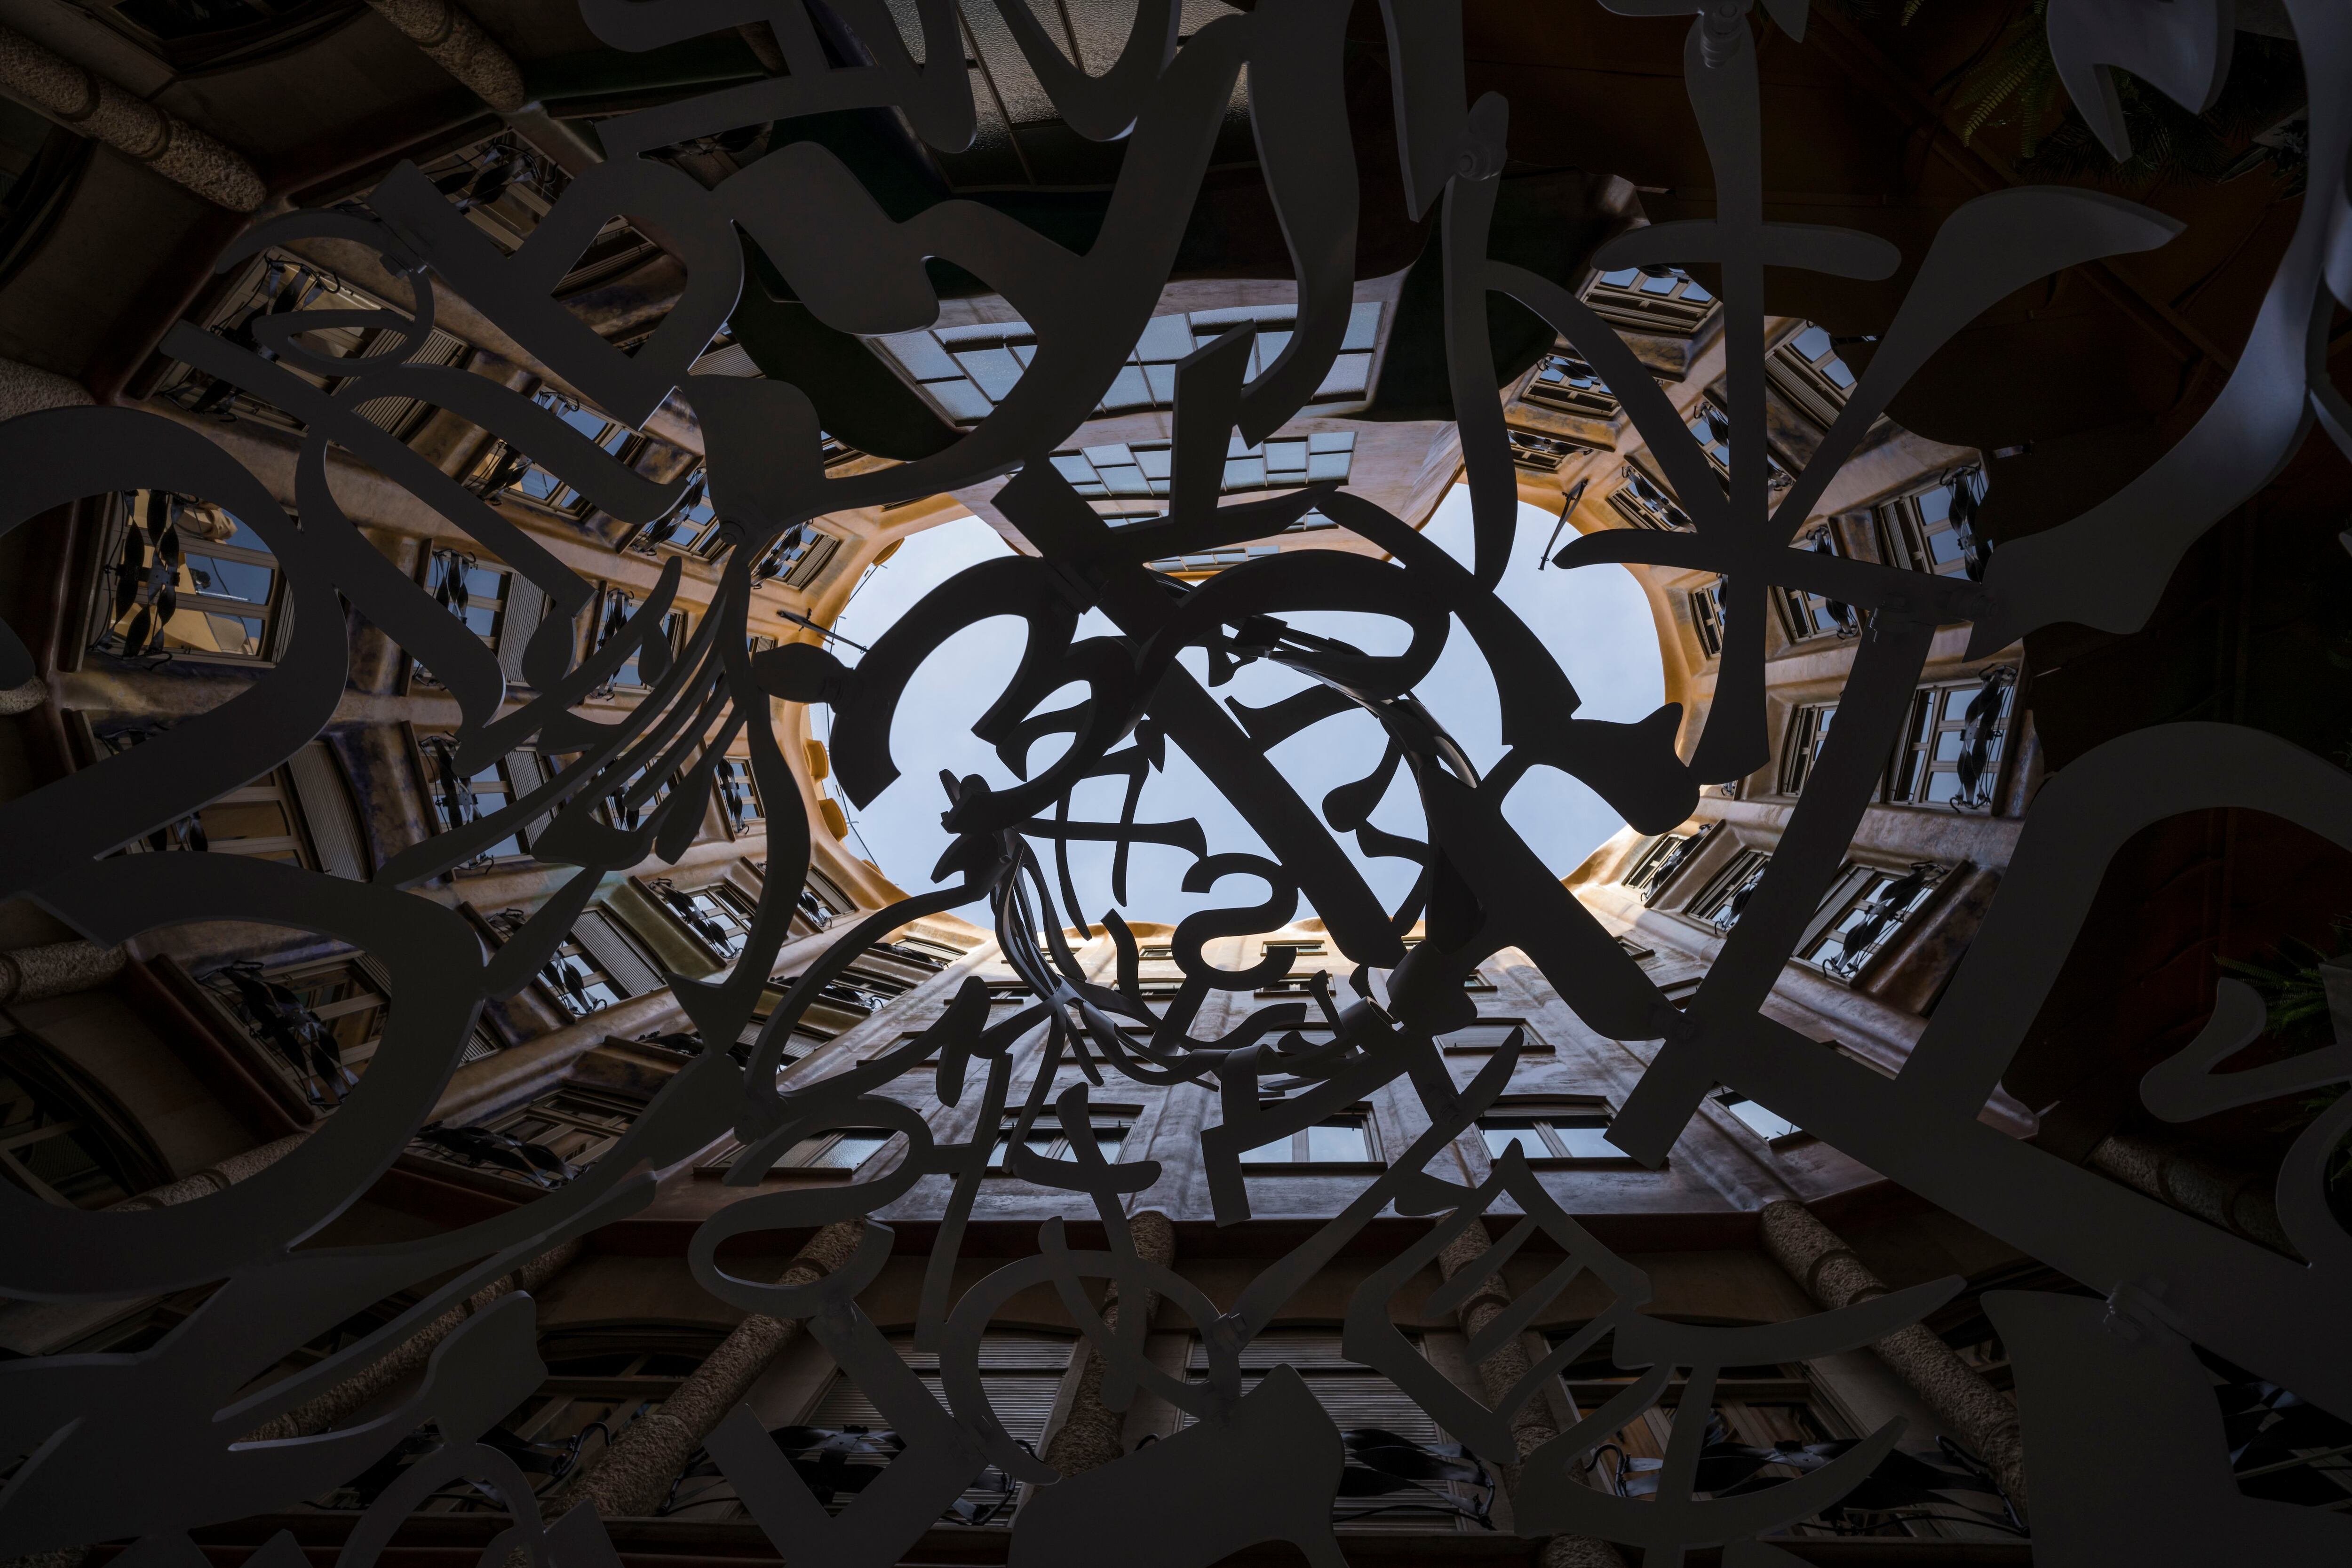 Fotografía tomada desde el interior de una de las monumentales obras de Jaume Plensa en la exposición 'Poesía del silencio' en La Pedrera (Barcelona)